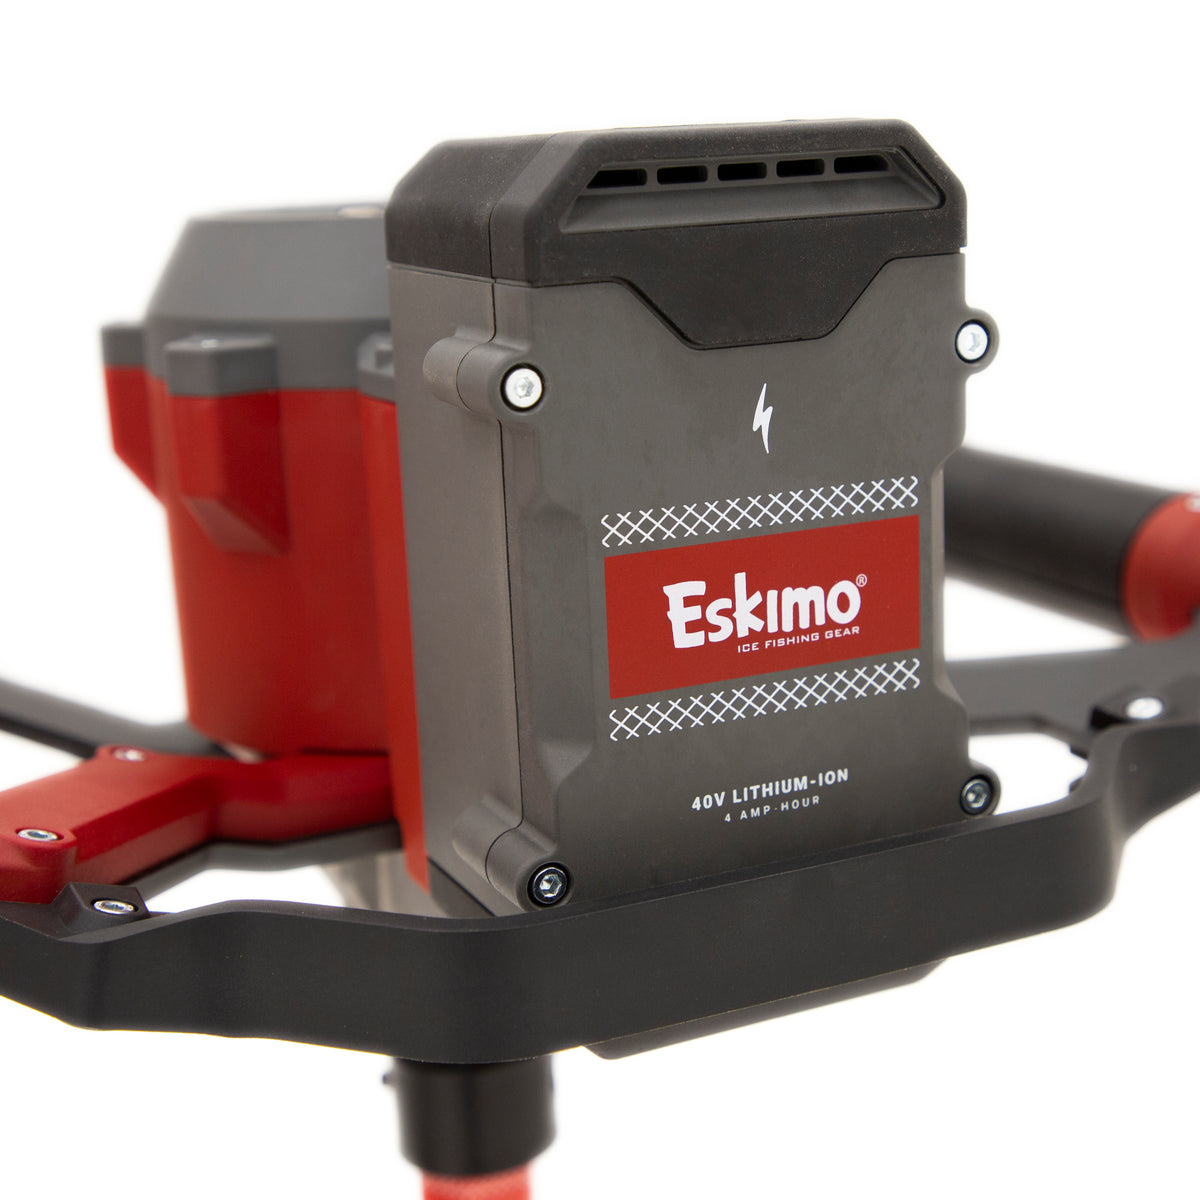 Eskimo E40 10" Composite Electric Auger 40v